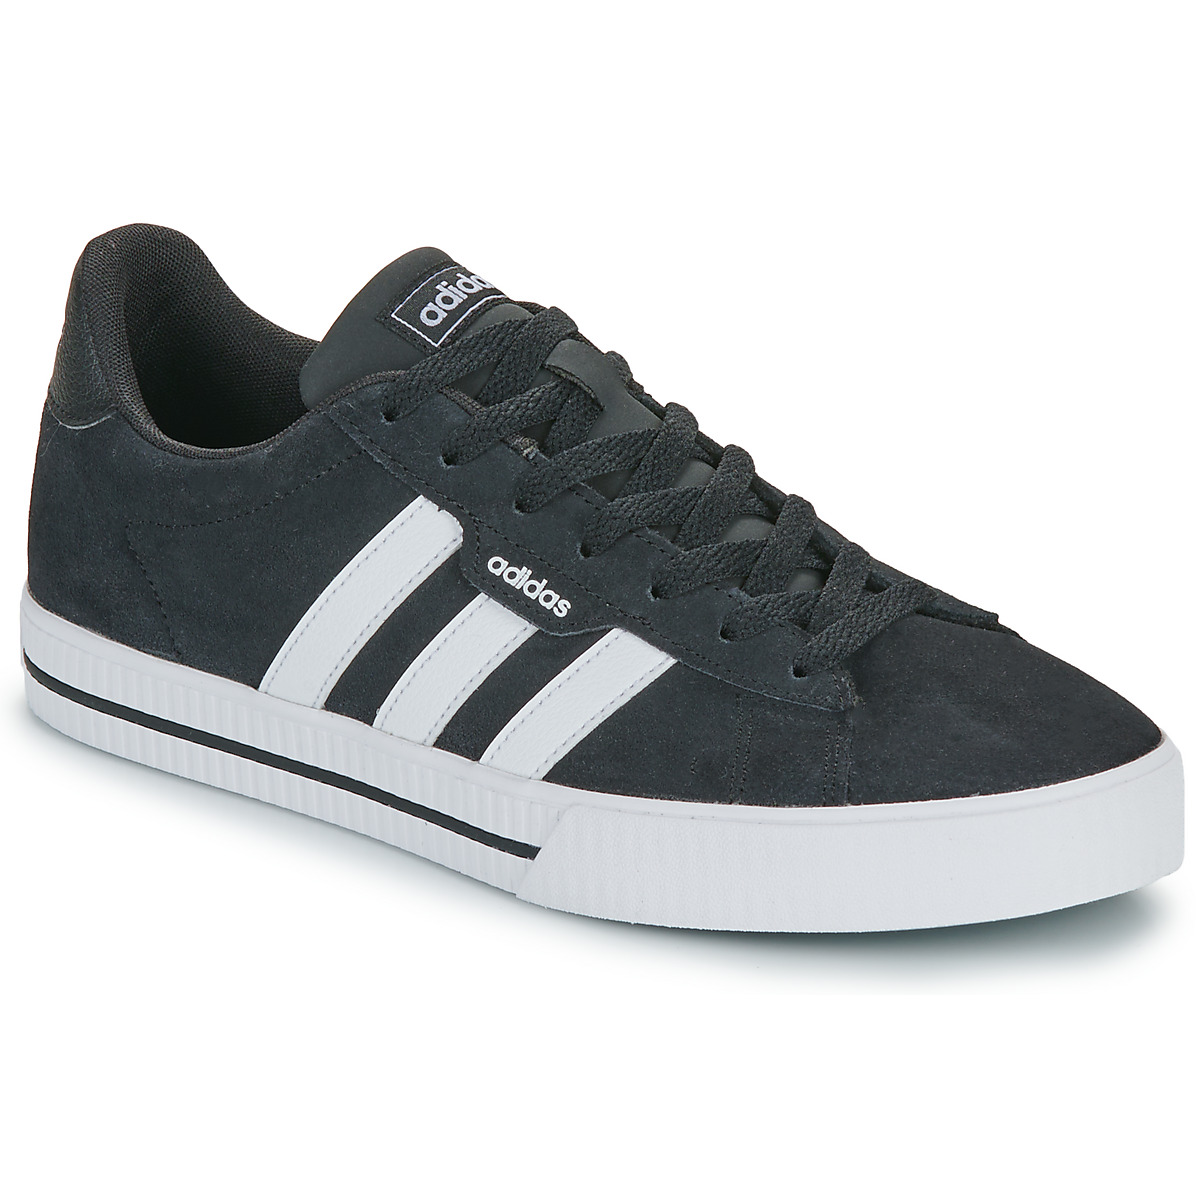 Adidas Daily 3.0 heren sneakers zwart/wit